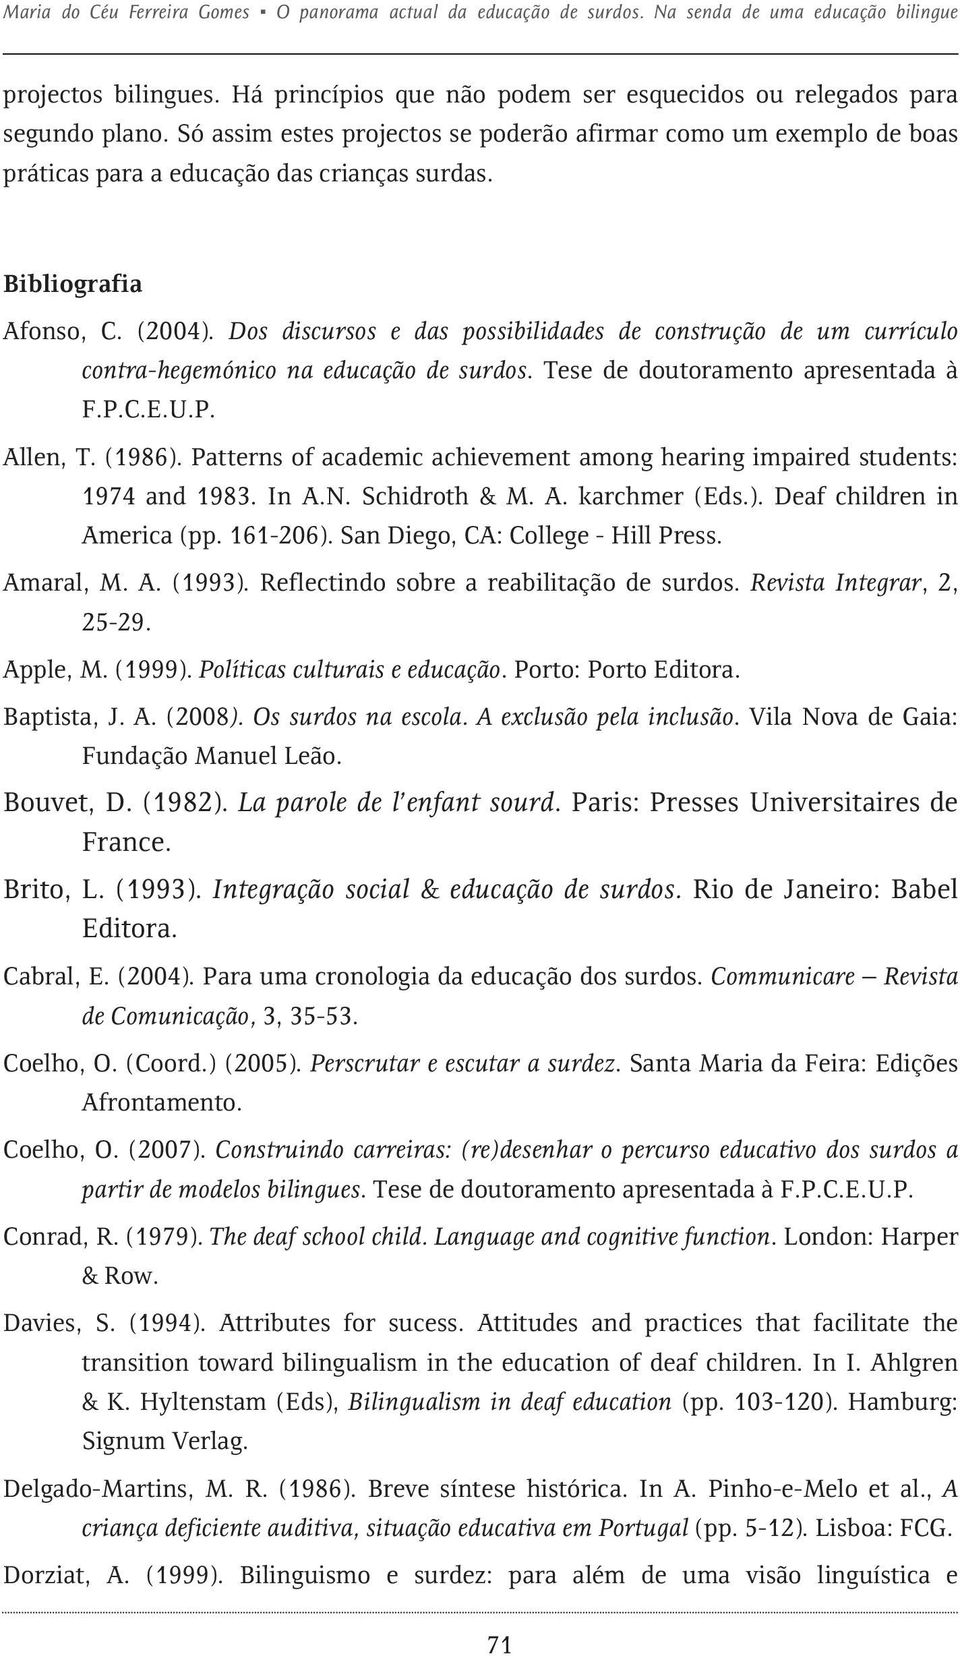 Dos discursos e das possibilidades de construção de um currículo contra-hegemónico na educação de surdos. Tese de doutoramento apresentada à F.P.C.E.U.P. Allen, T. (1986).